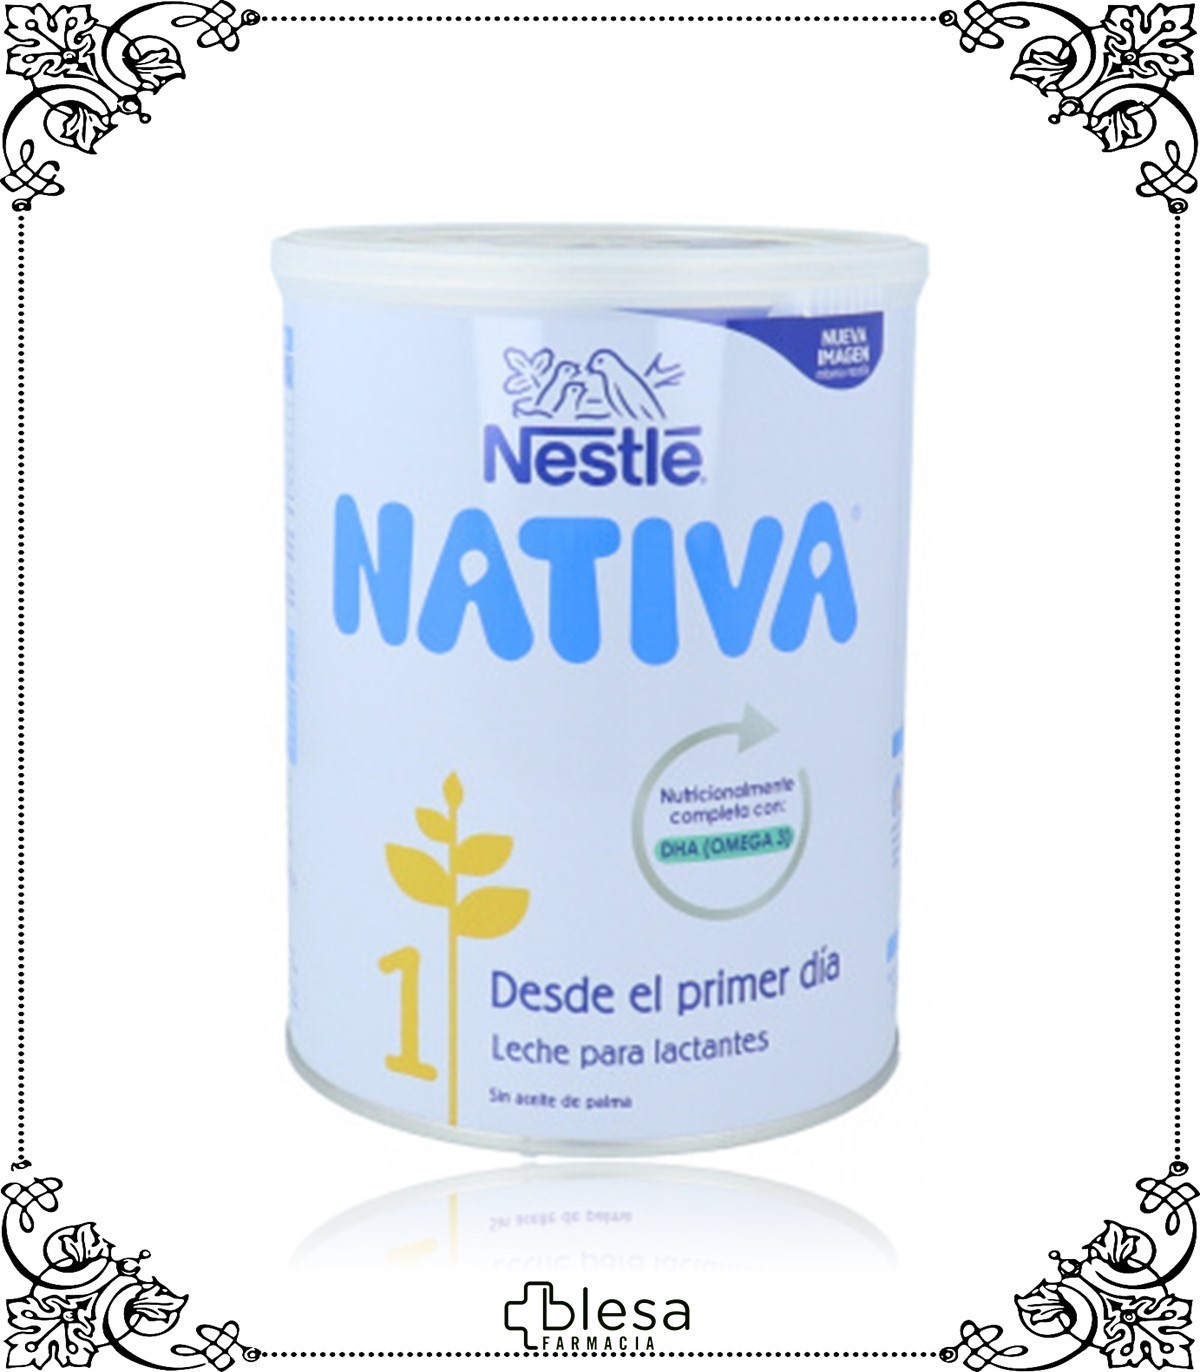 Nestle Nativa 1 800 gr